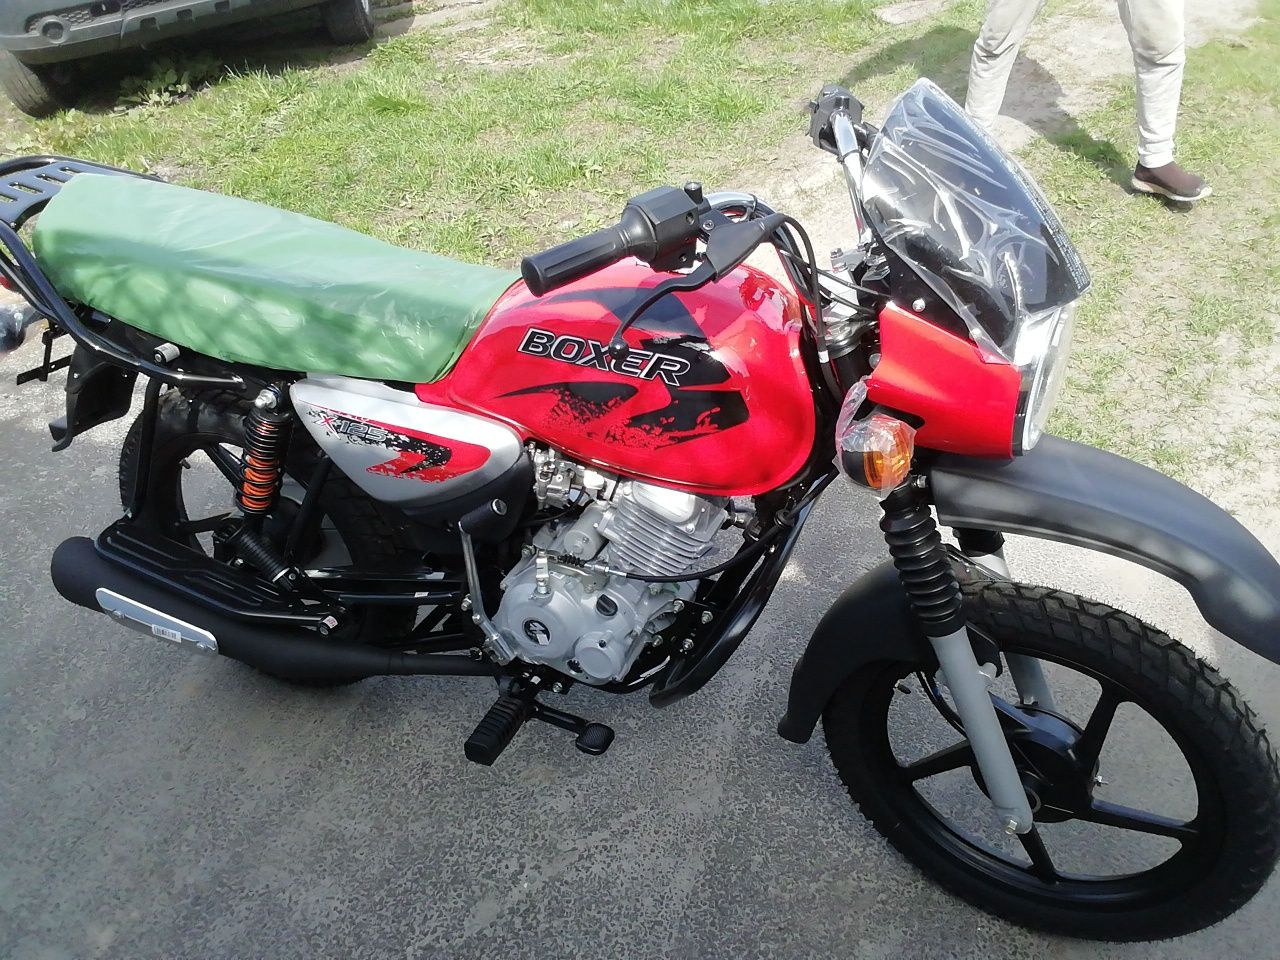 Продам мотоцикл" BAJAJ(Баджаж)"BOXER" 125см.куб  1250$